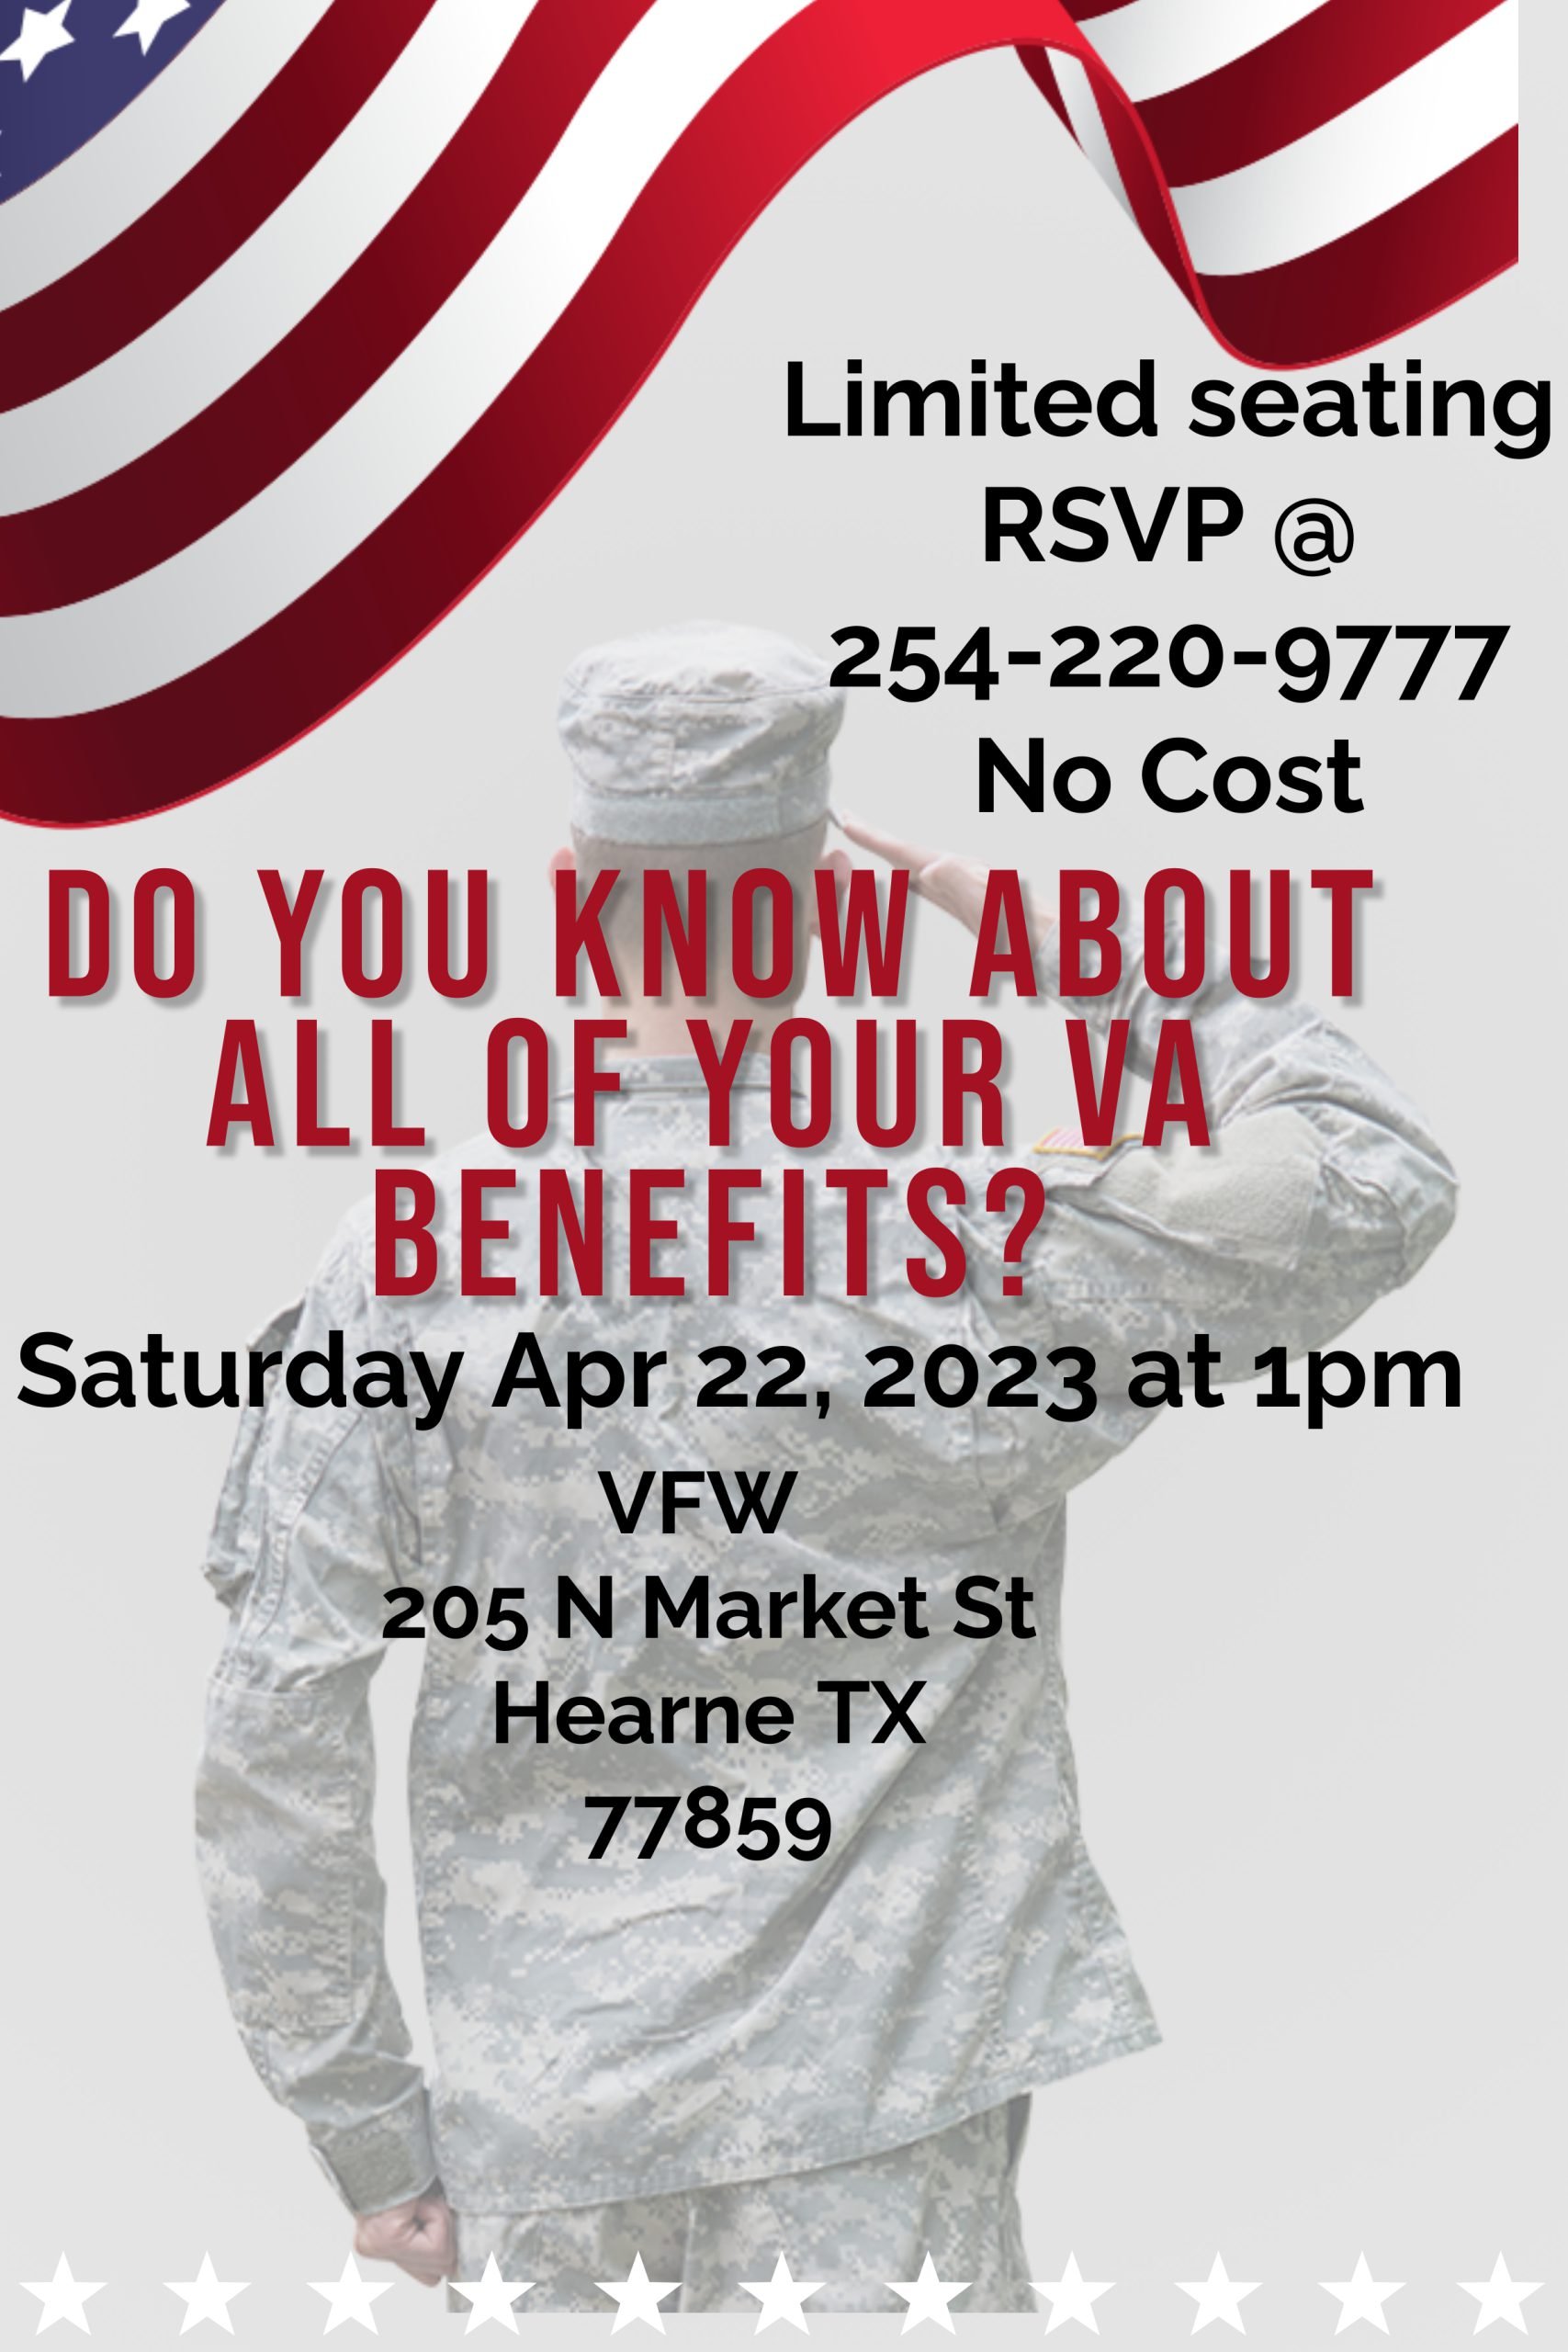 Veterans benefits event flyer